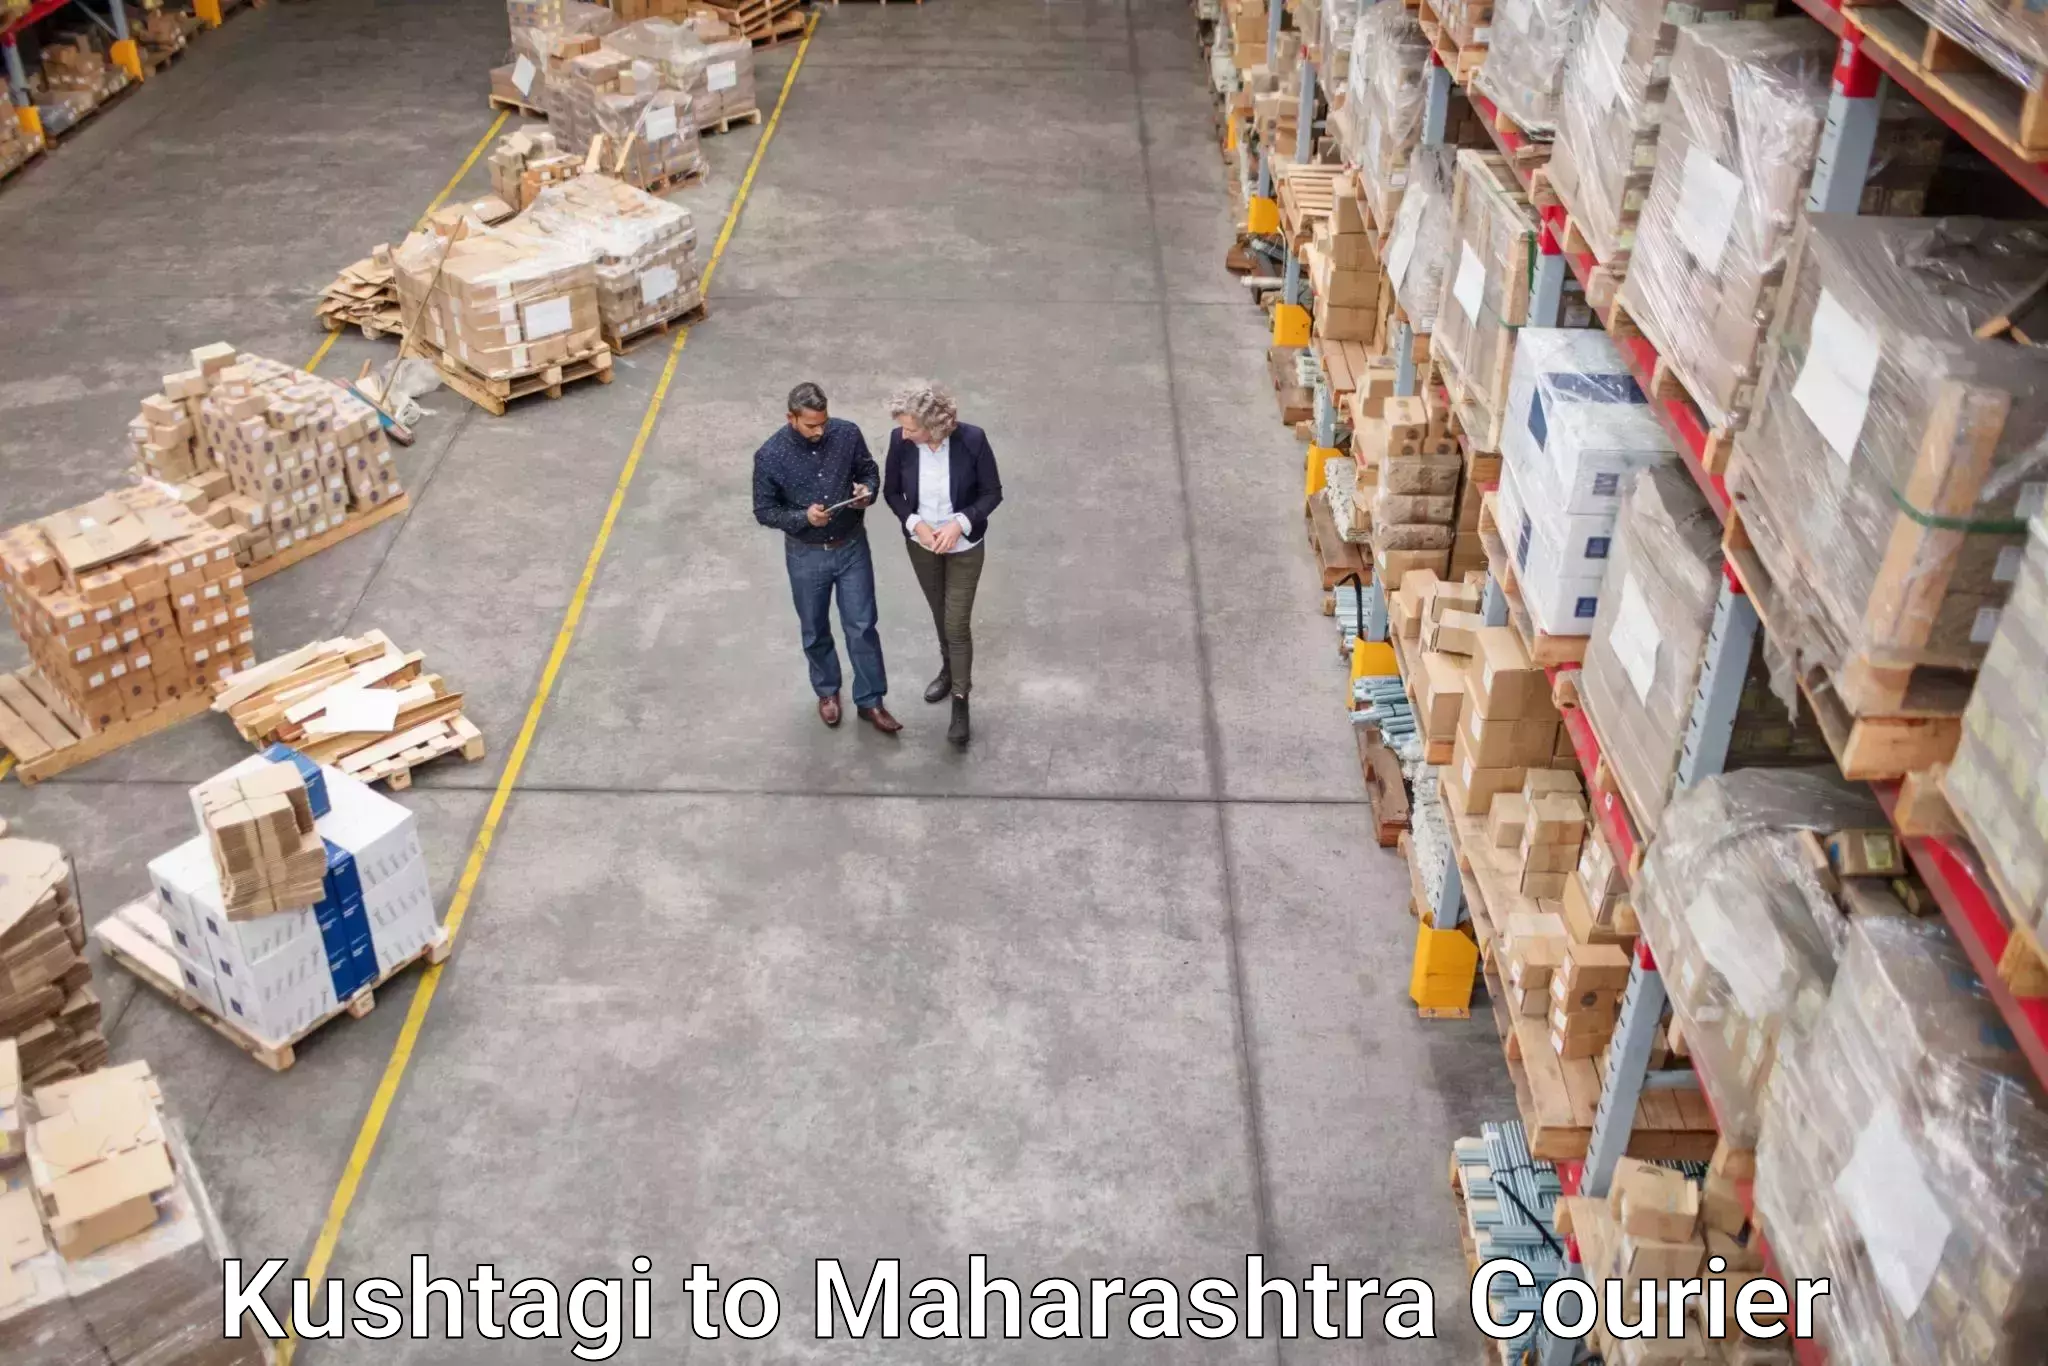 Cargo delivery service Kushtagi to Mumbai Port